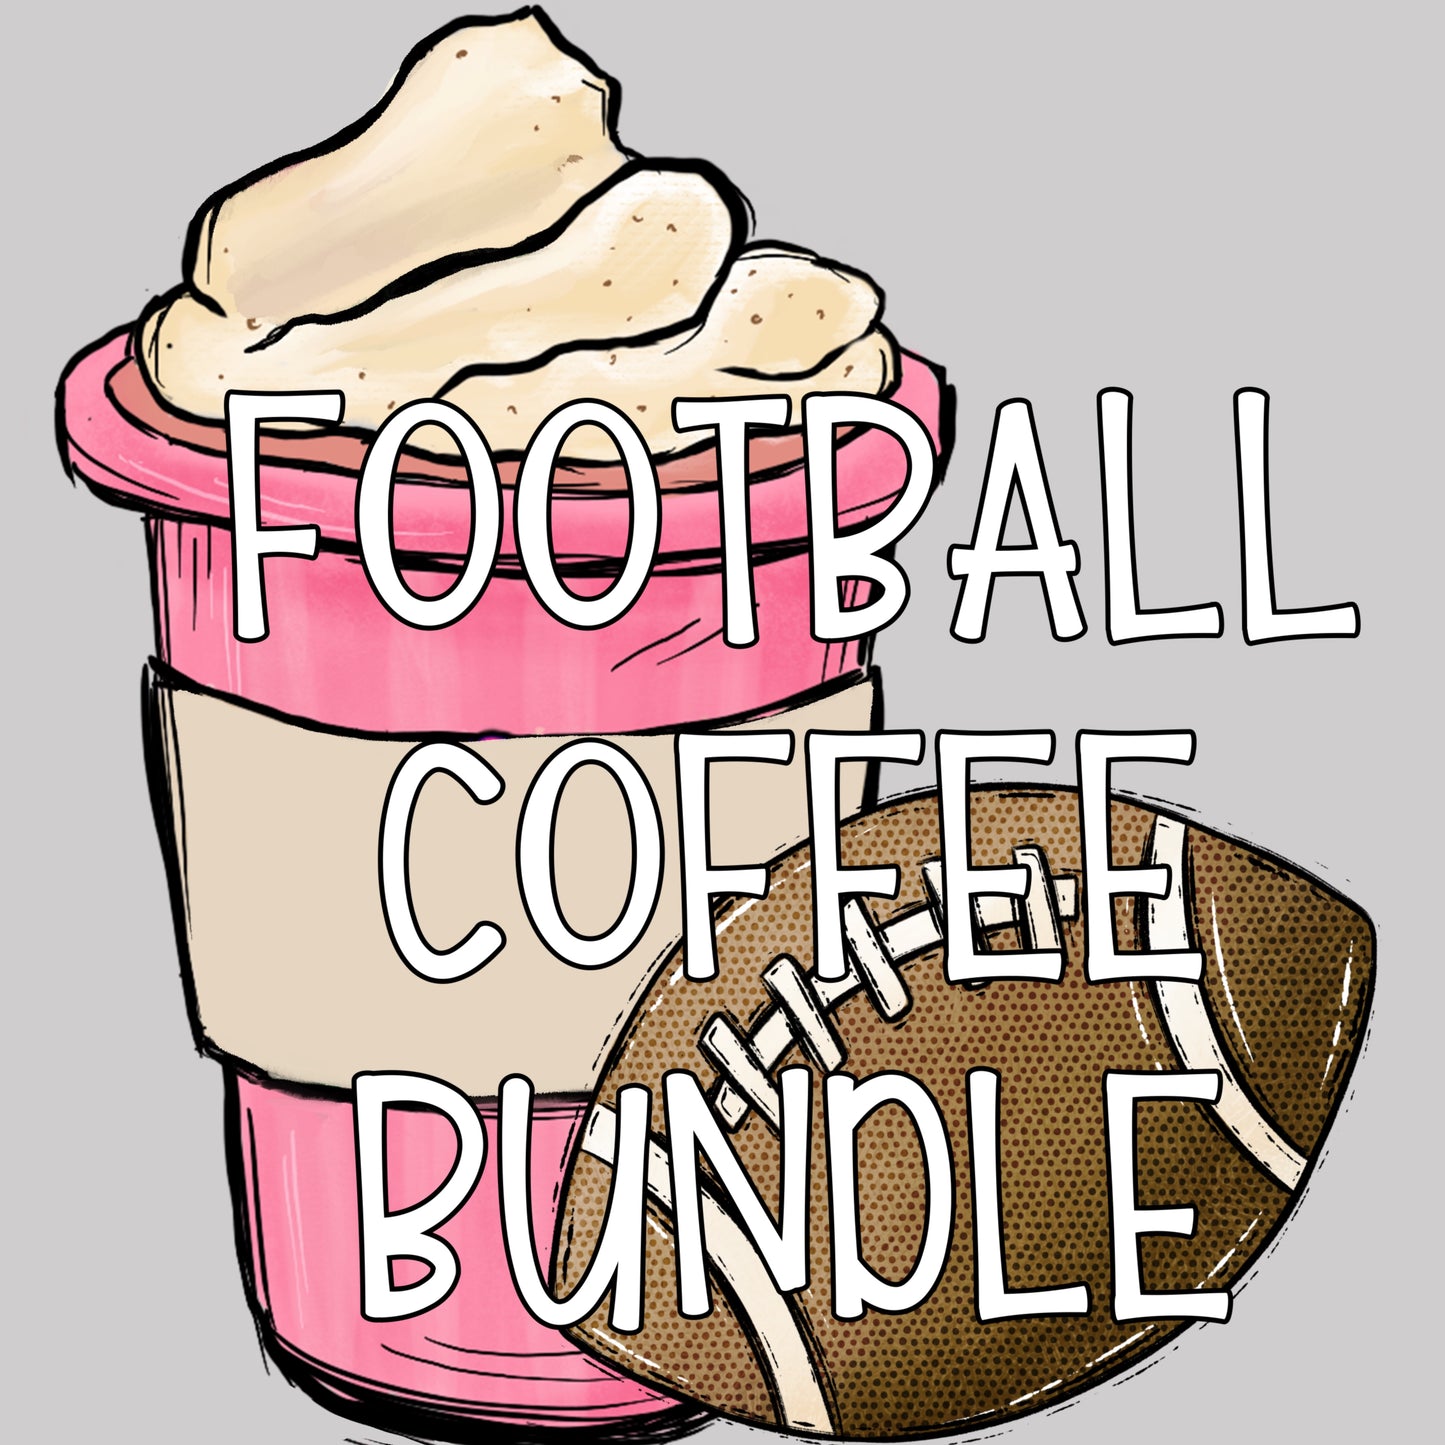 Football Coffee Drive